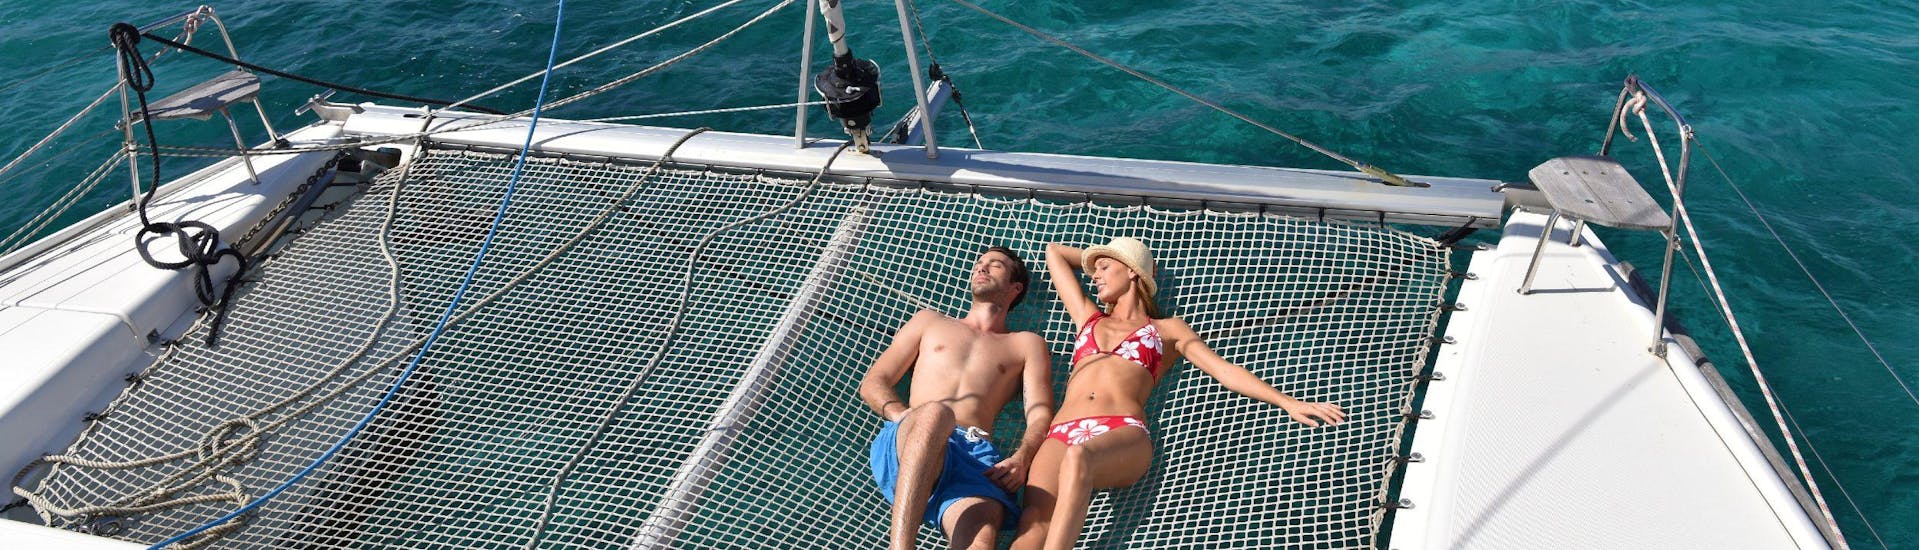 Een koppel is aan het zonnebaden op een catamaran.